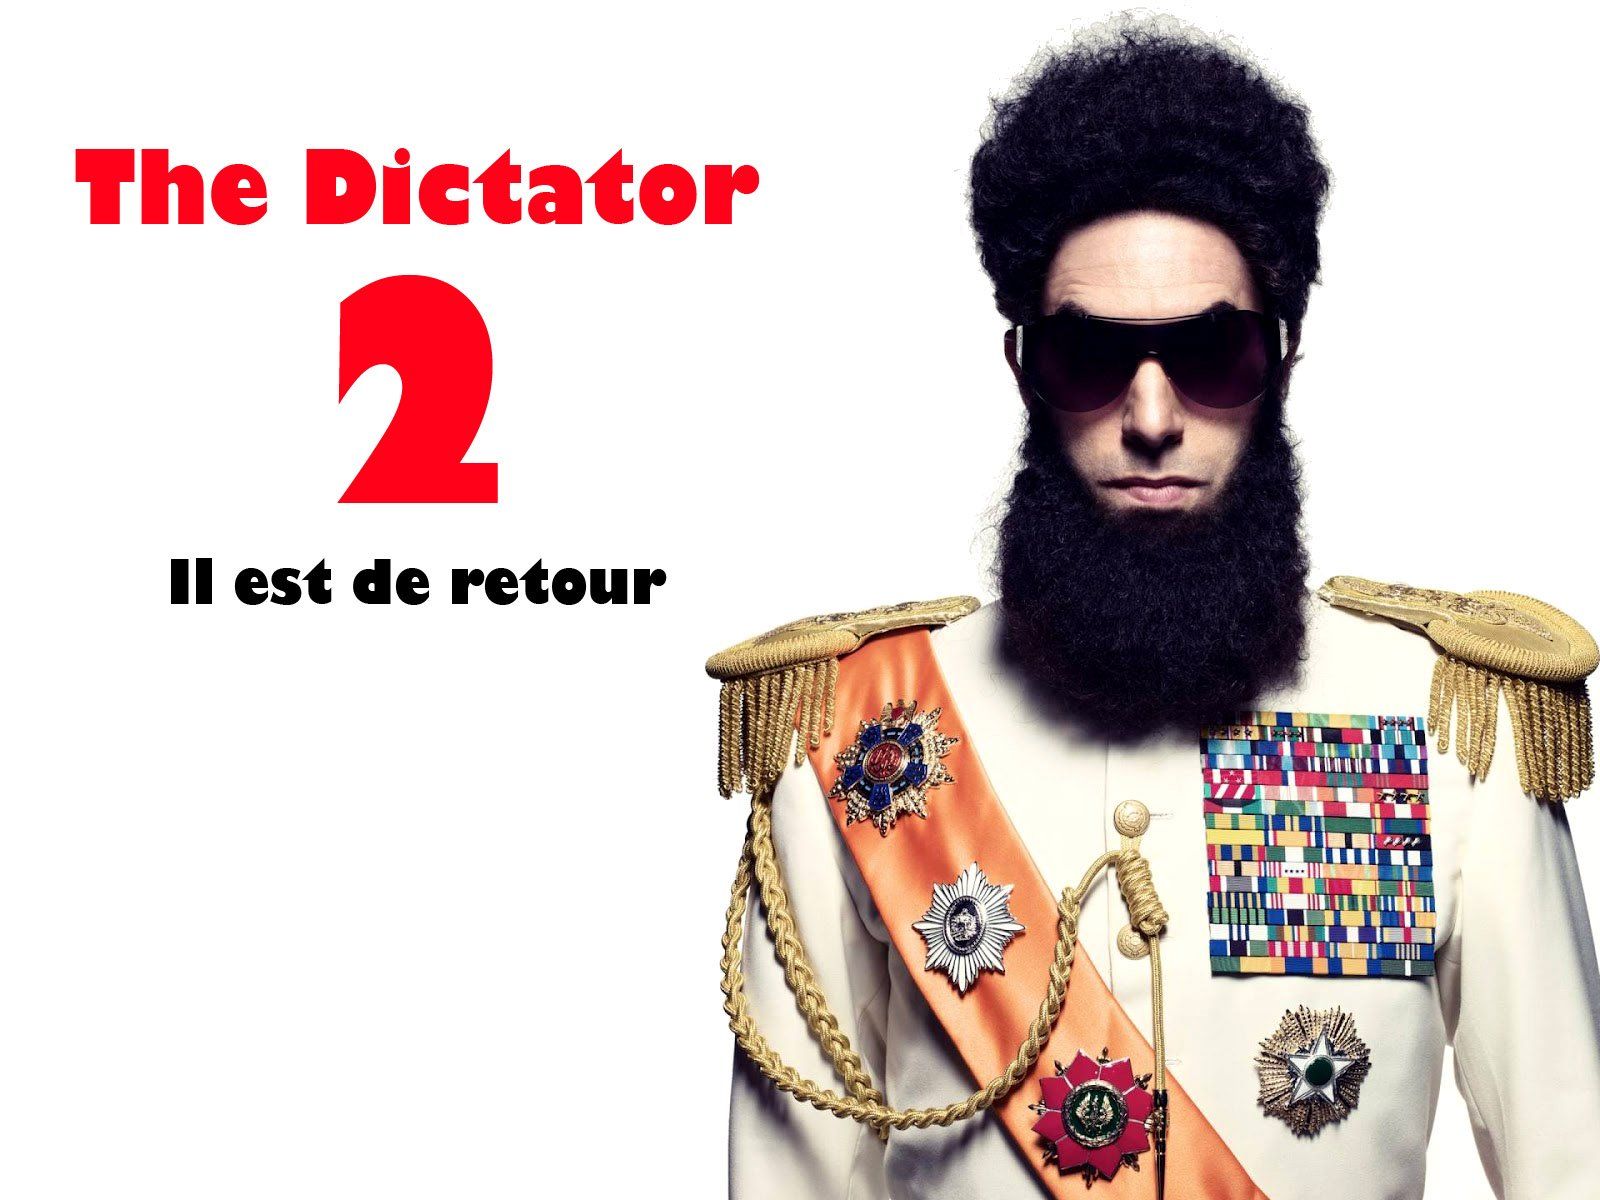 The Dictator 2 : Sacha Baron Cohen revient dans une bande annonce exclusive